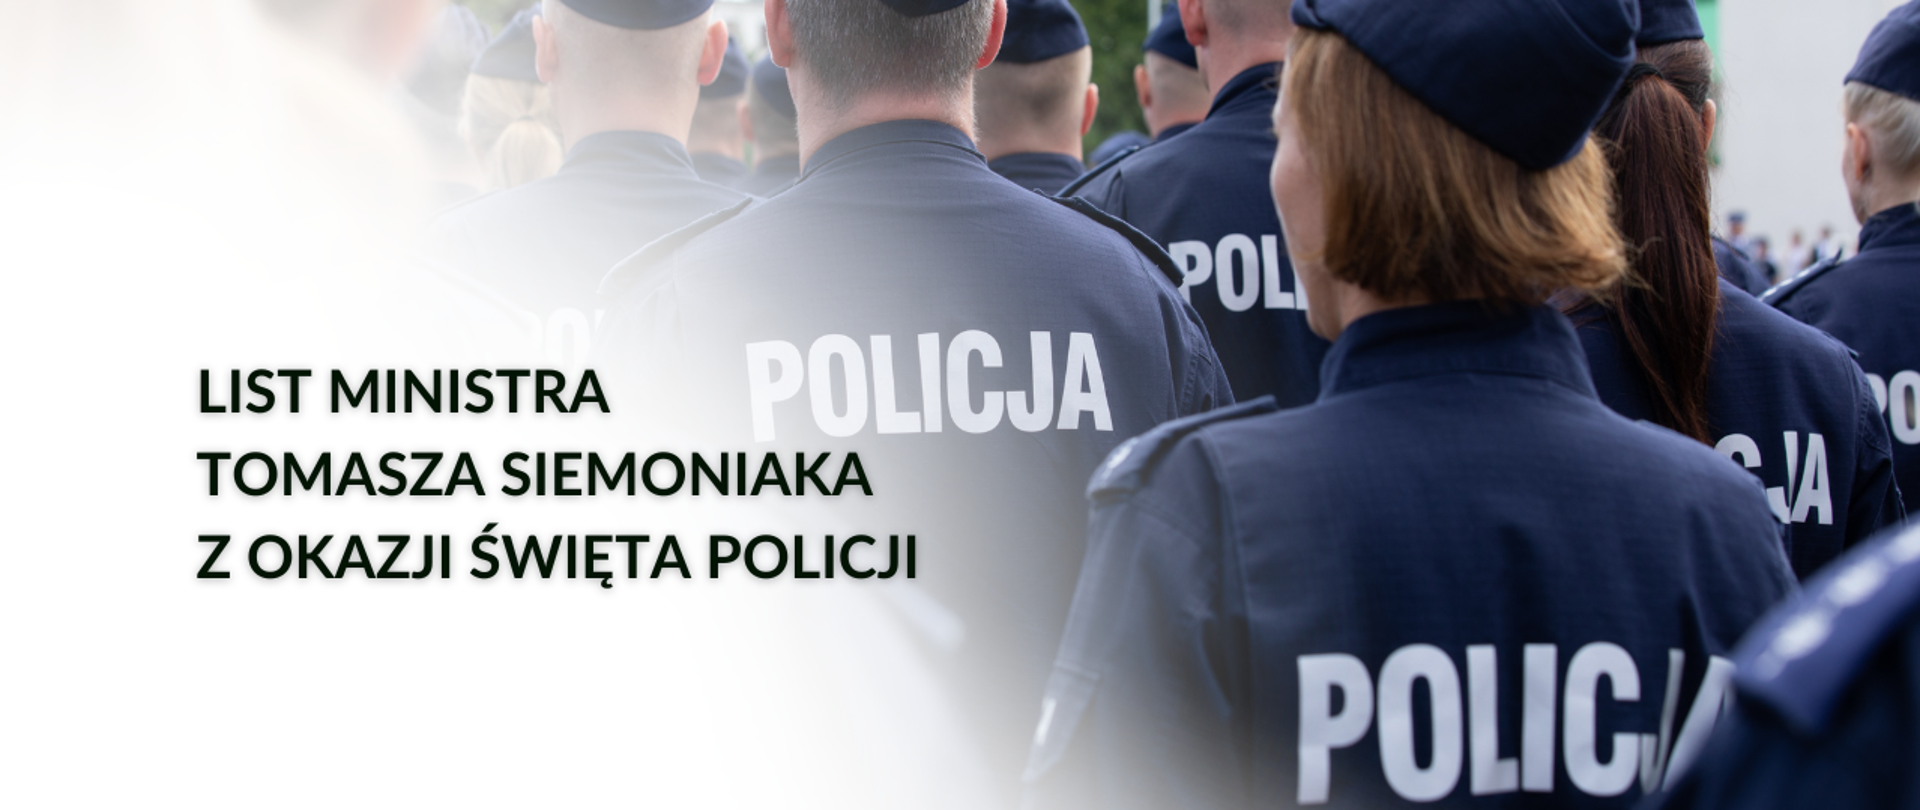 W tle funkcjonariusze Policji stojący tyłem. Treść: List ministra Tomasza Siemoniaka z okazji Święta Policji